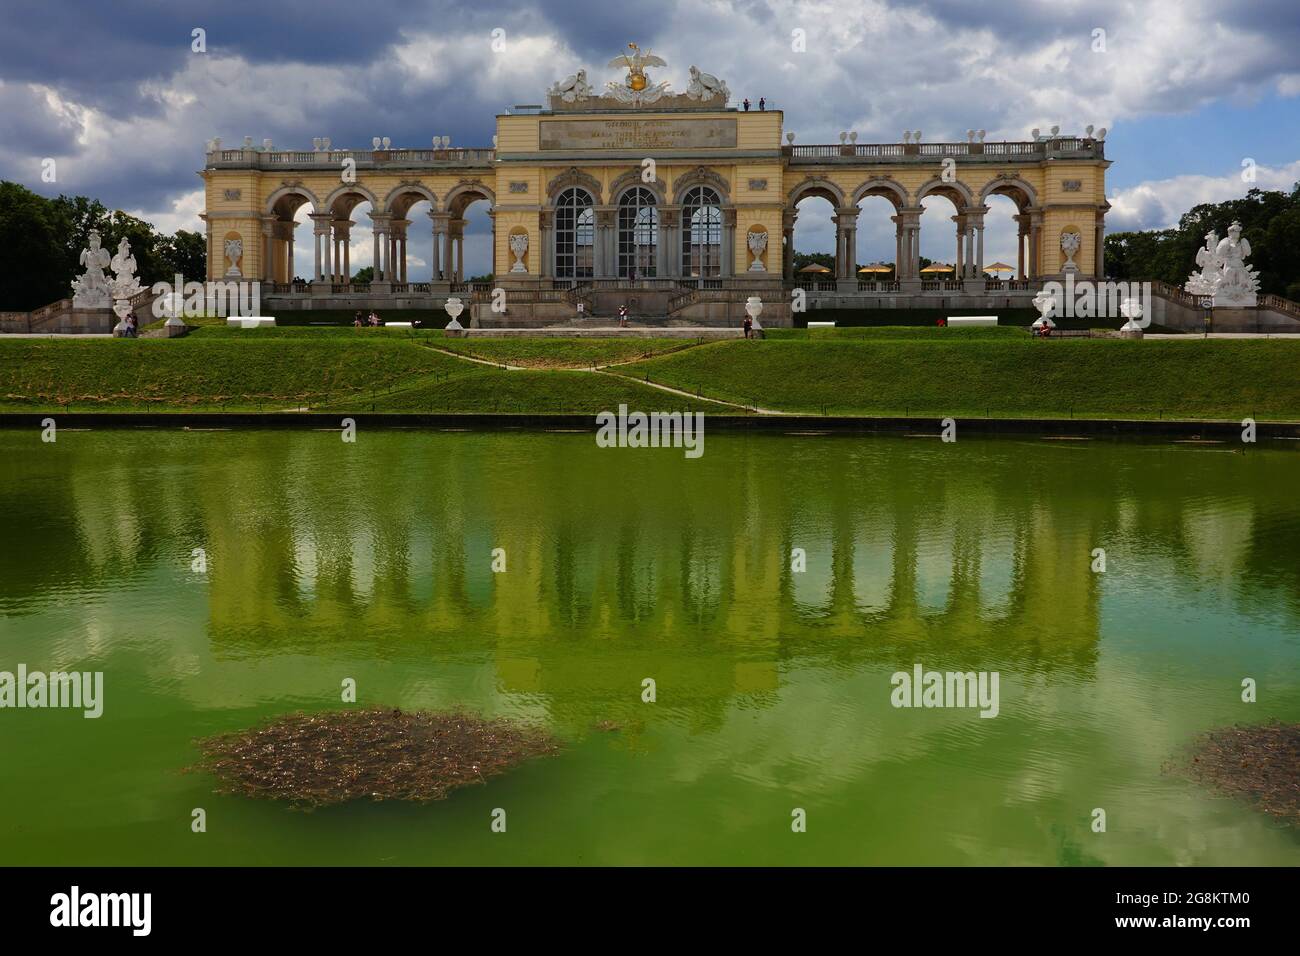 Wien, Österreich - im Schlosspark von Schönbrunn Blick zur Gloriette mit Spiegelung im See Banque D'Images